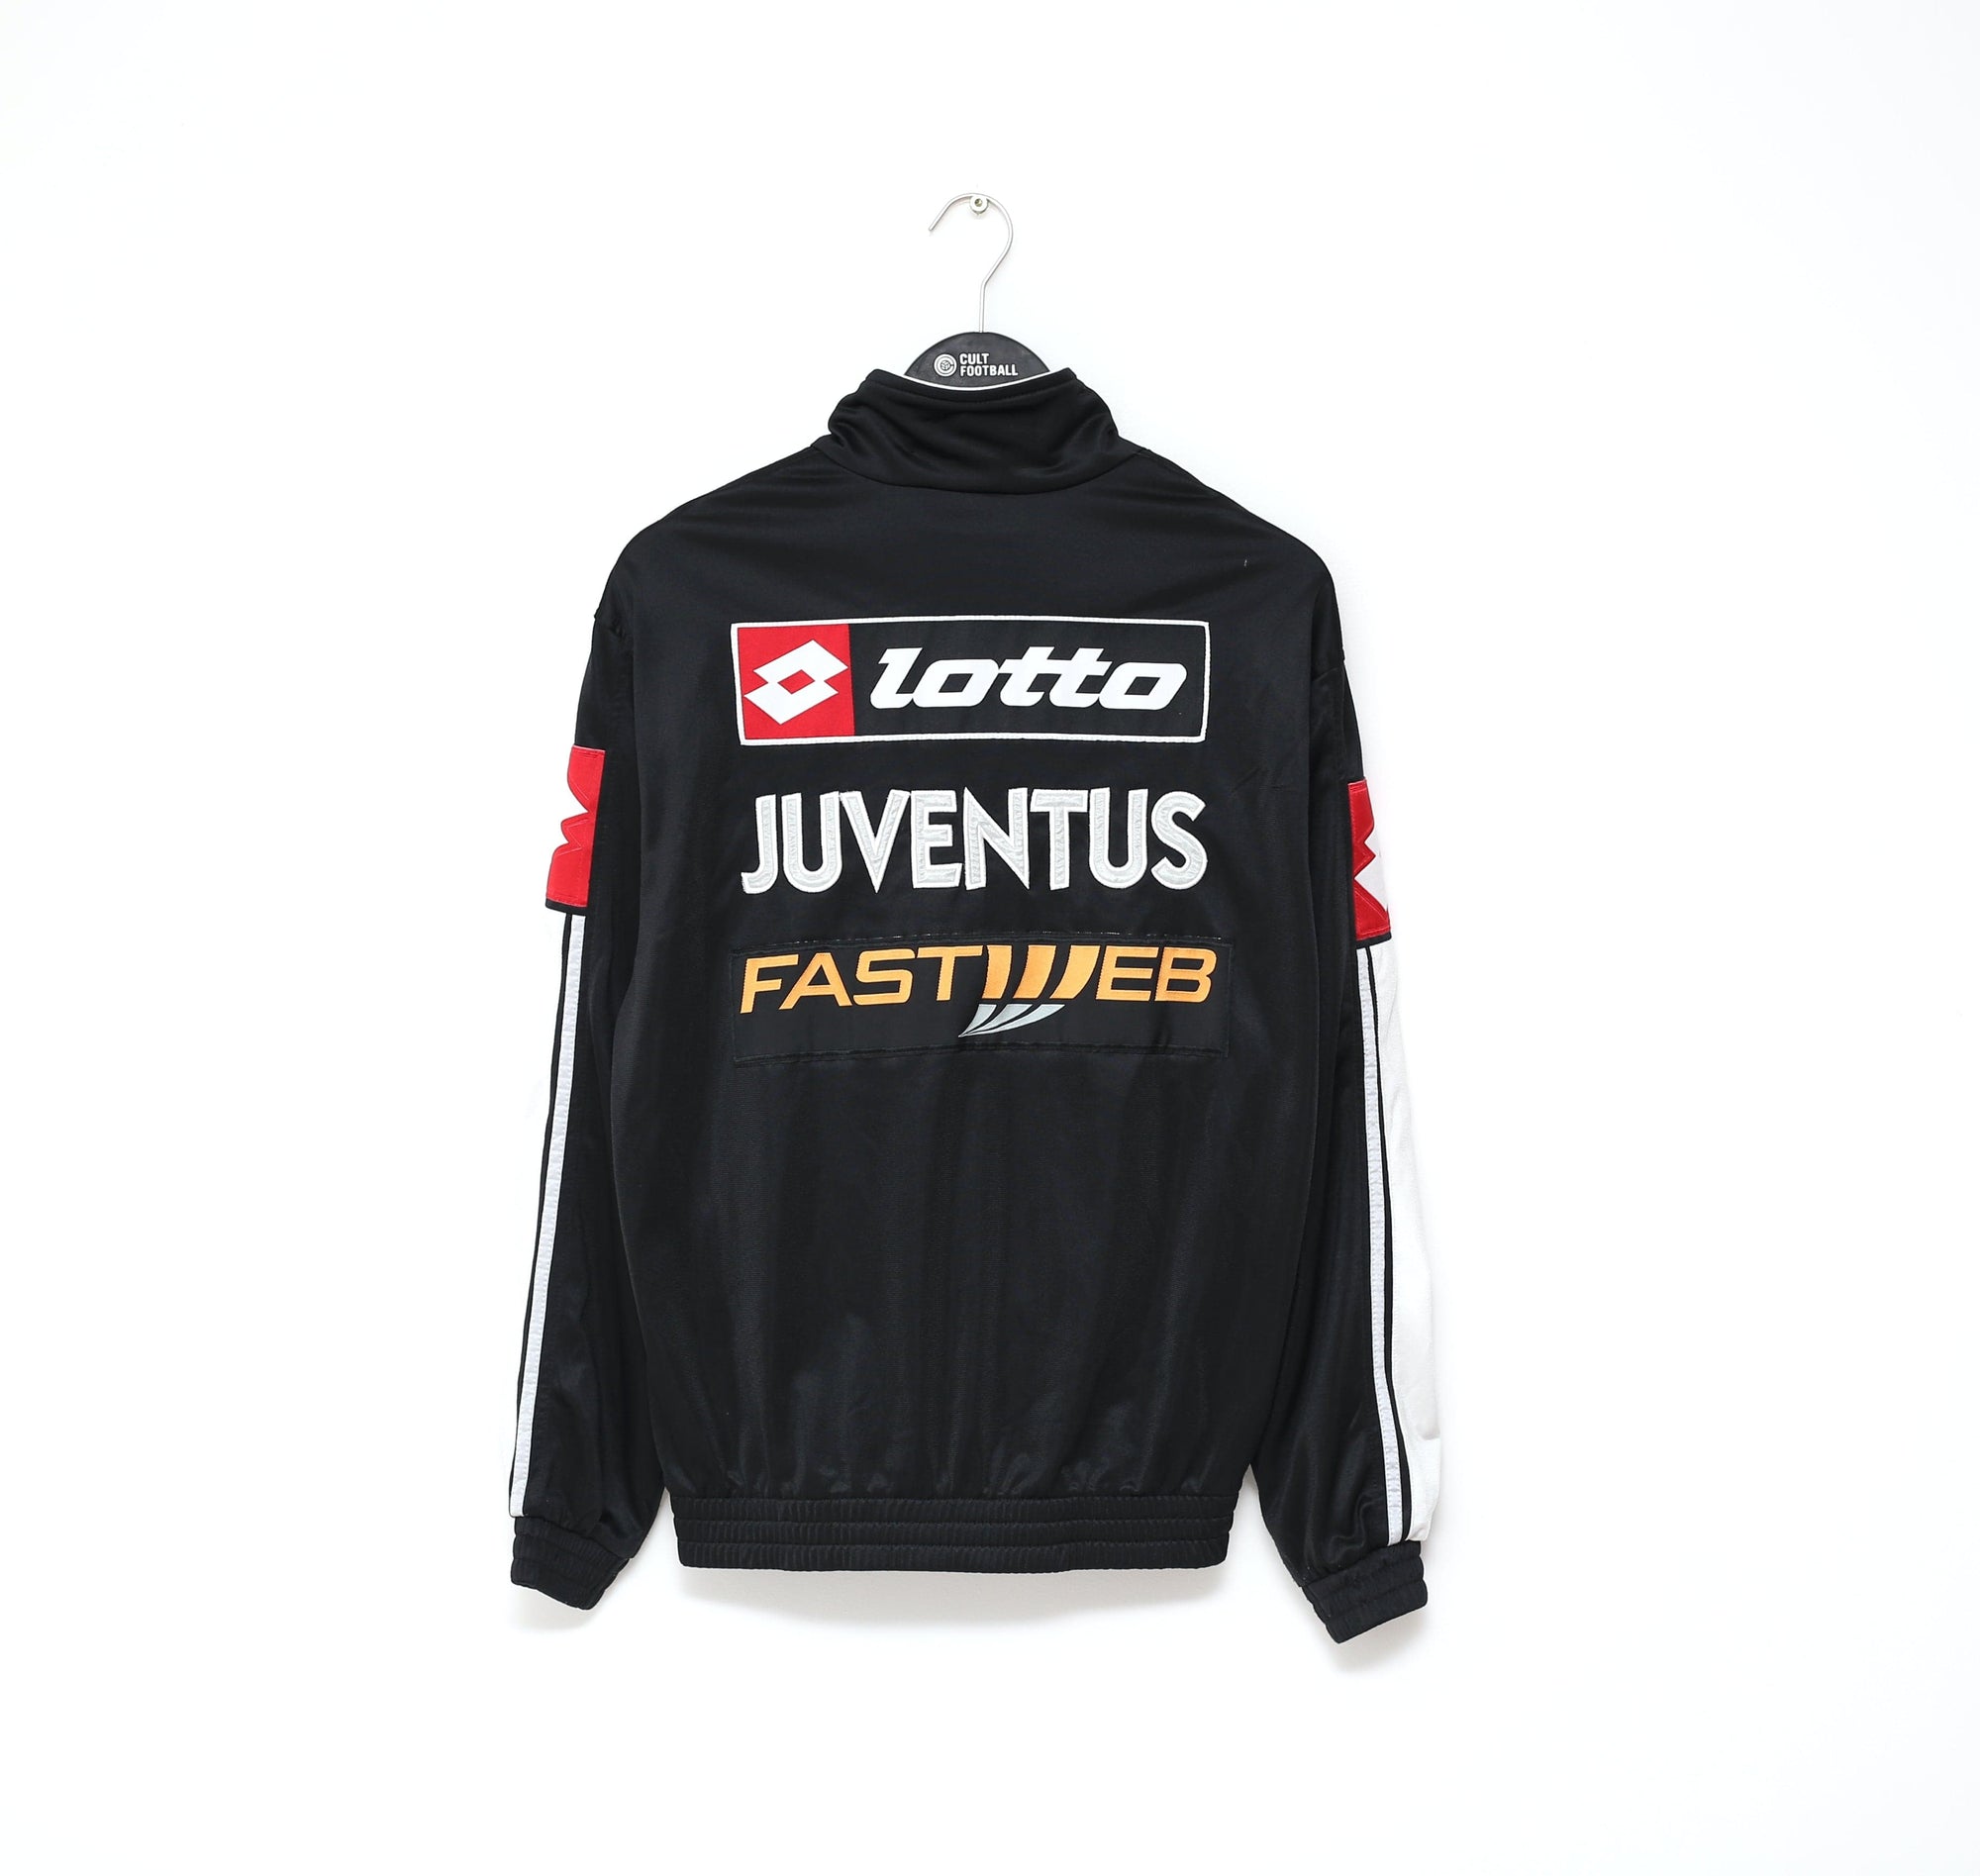 2003/04 JUVENTUS Vintage Lotto Track Top Jacket (M) Del Piero, Nedved